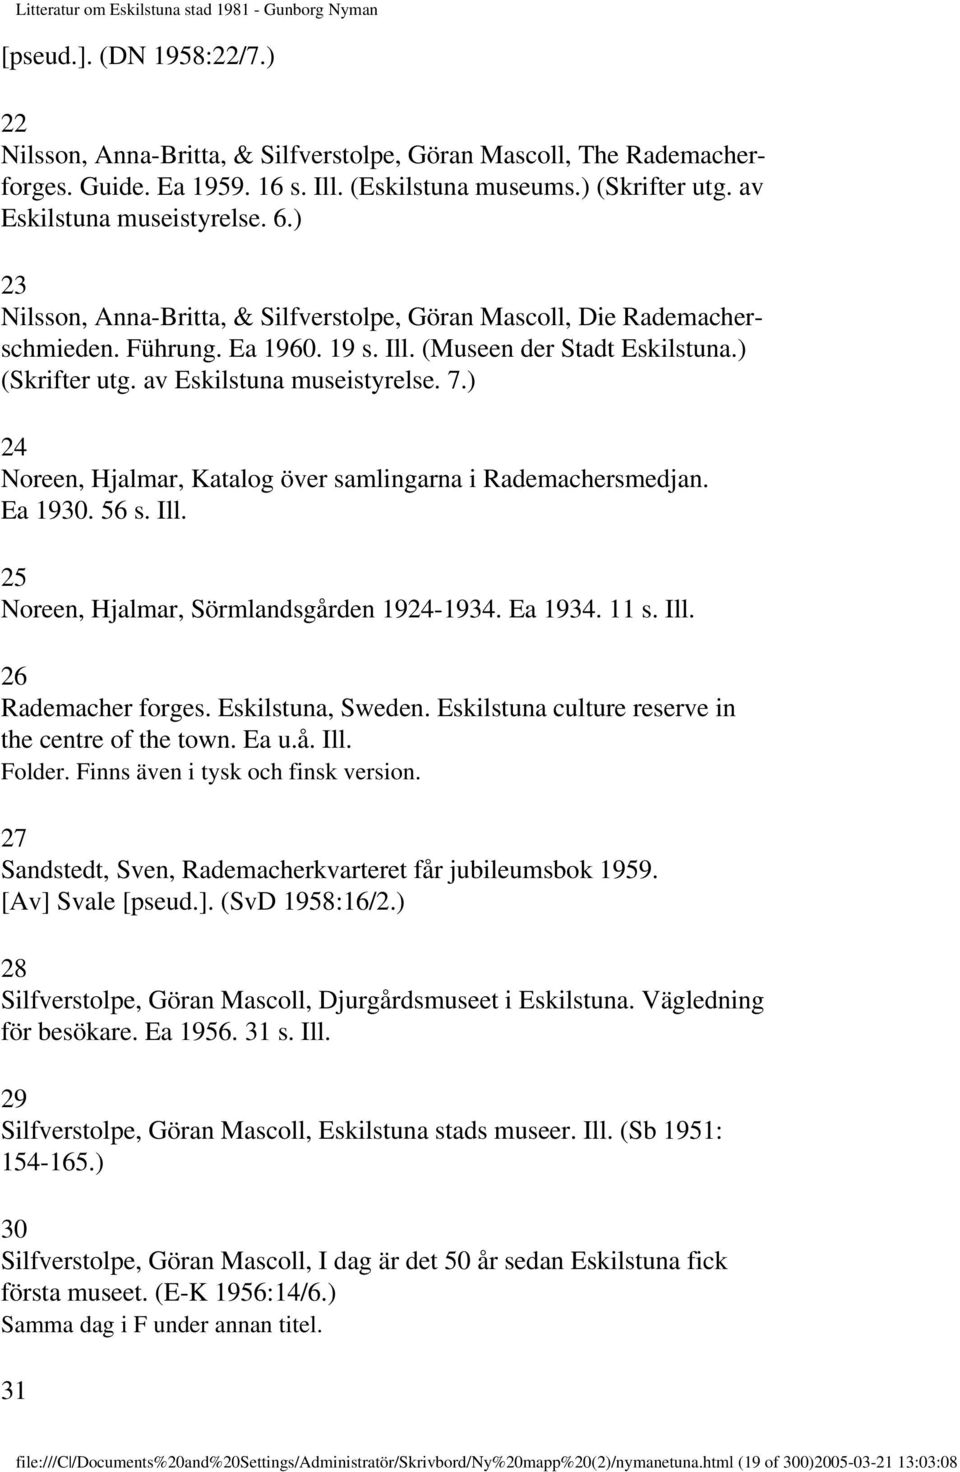 ) 24 Noreen, Hjalmar, Katalog över samlingarna i Rademachersmedjan. Ea 1930. 56 s. Ill. 25 Noreen, Hjalmar, Sörmlandsgården 1924-1934. Ea 1934. 11 s. Ill. 26 Rademacher forges. Eskilstuna, Sweden.